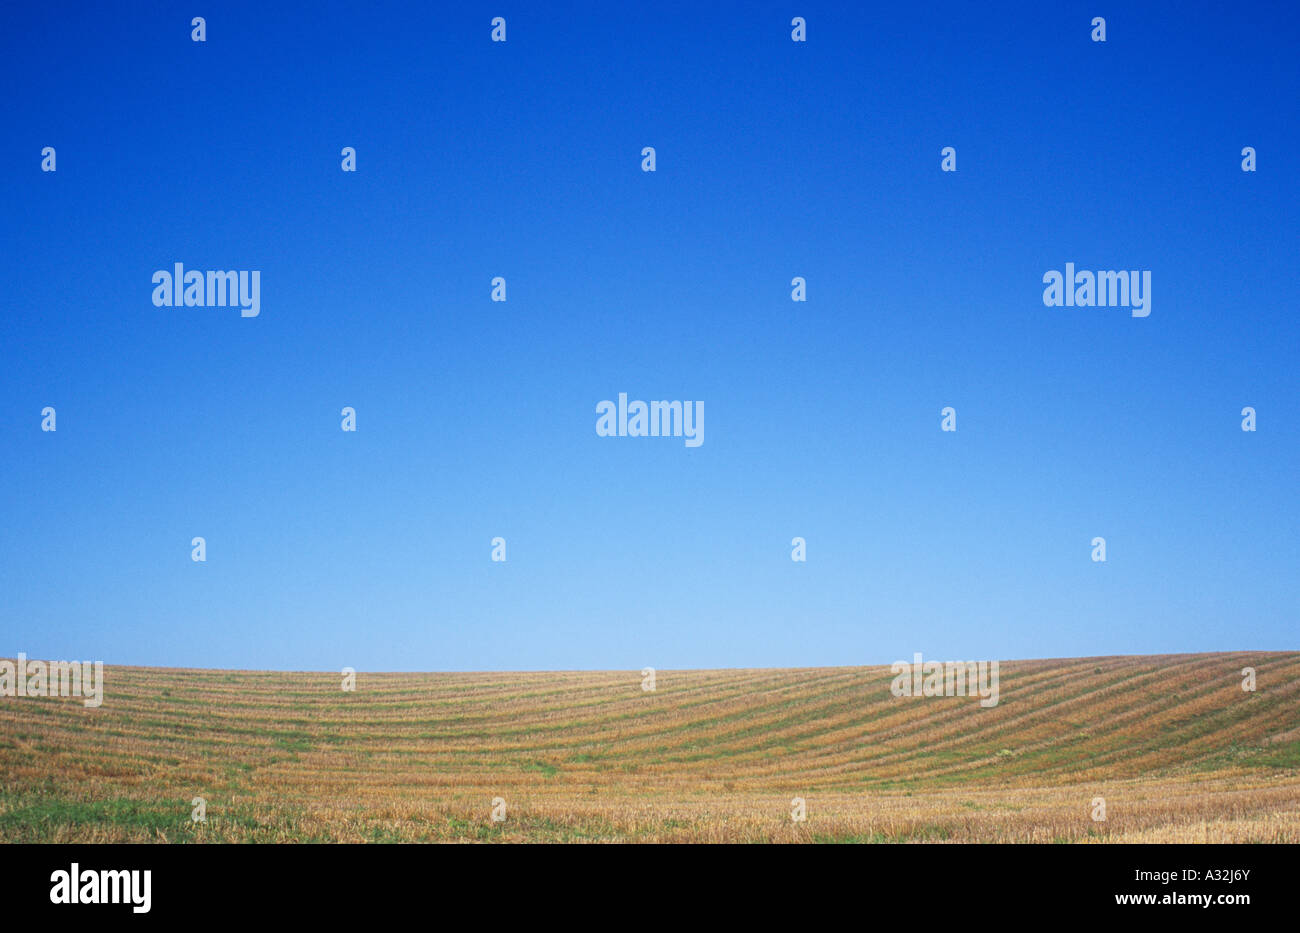 Sanft hügelige Gebiet der goldenen braunen Getreidestoppeln übersät mit dem Grün der wachsenden Rasen oder Unkraut unter blauem Himmel Stockfoto